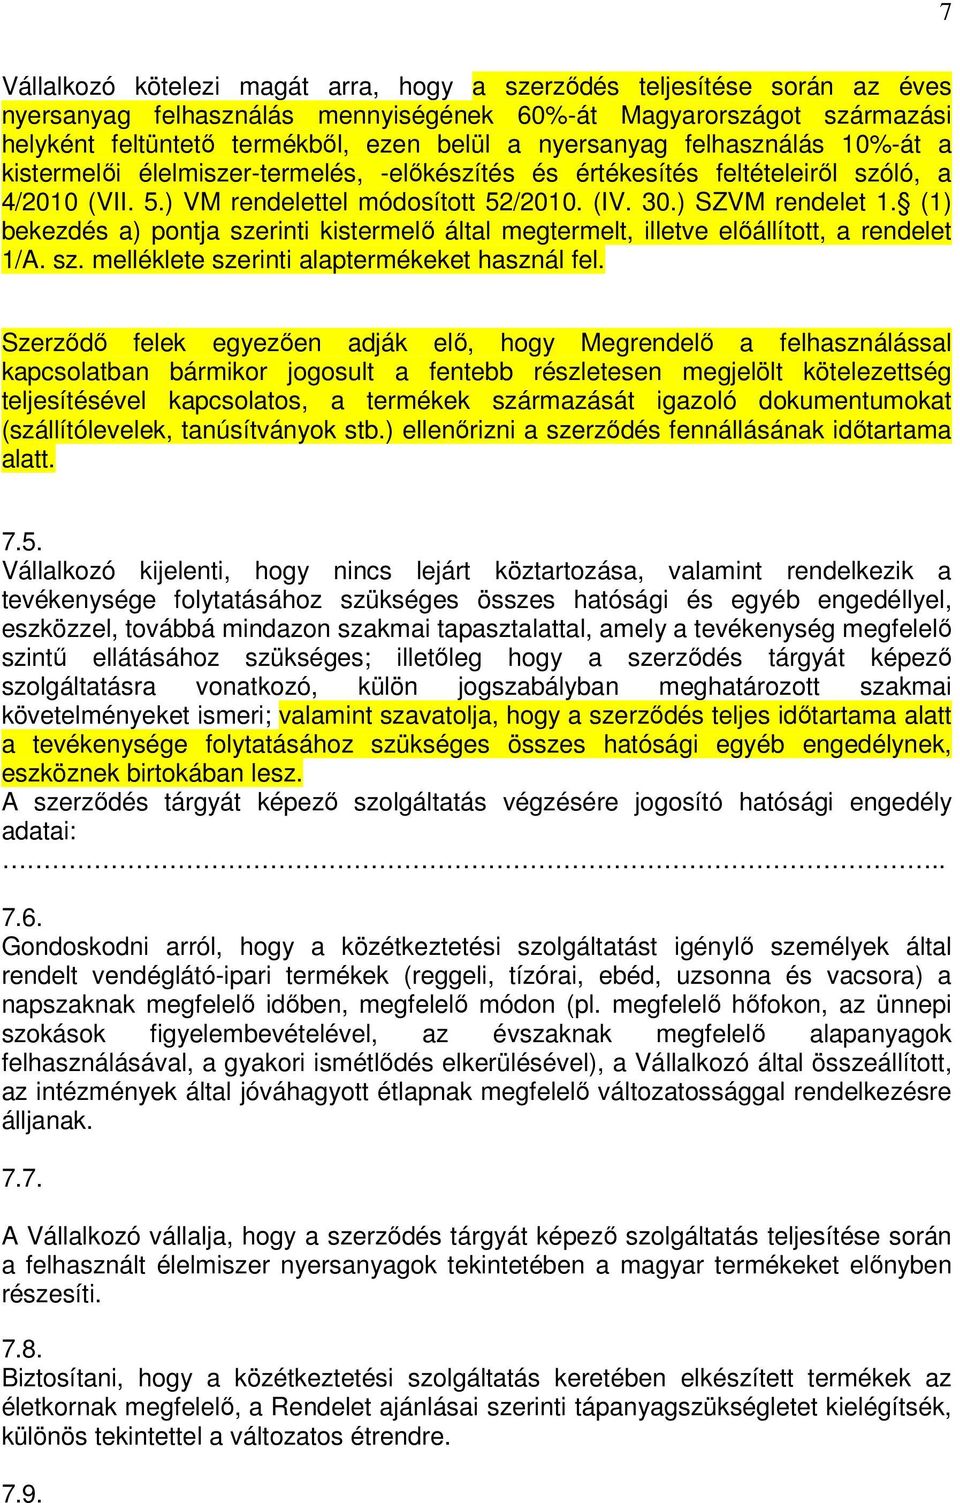 (1) bekezdés a) pontja szerinti kistermelı által megtermelt, illetve elıállított, a rendelet 1/A. sz. melléklete szerinti alaptermékeket használ fel.